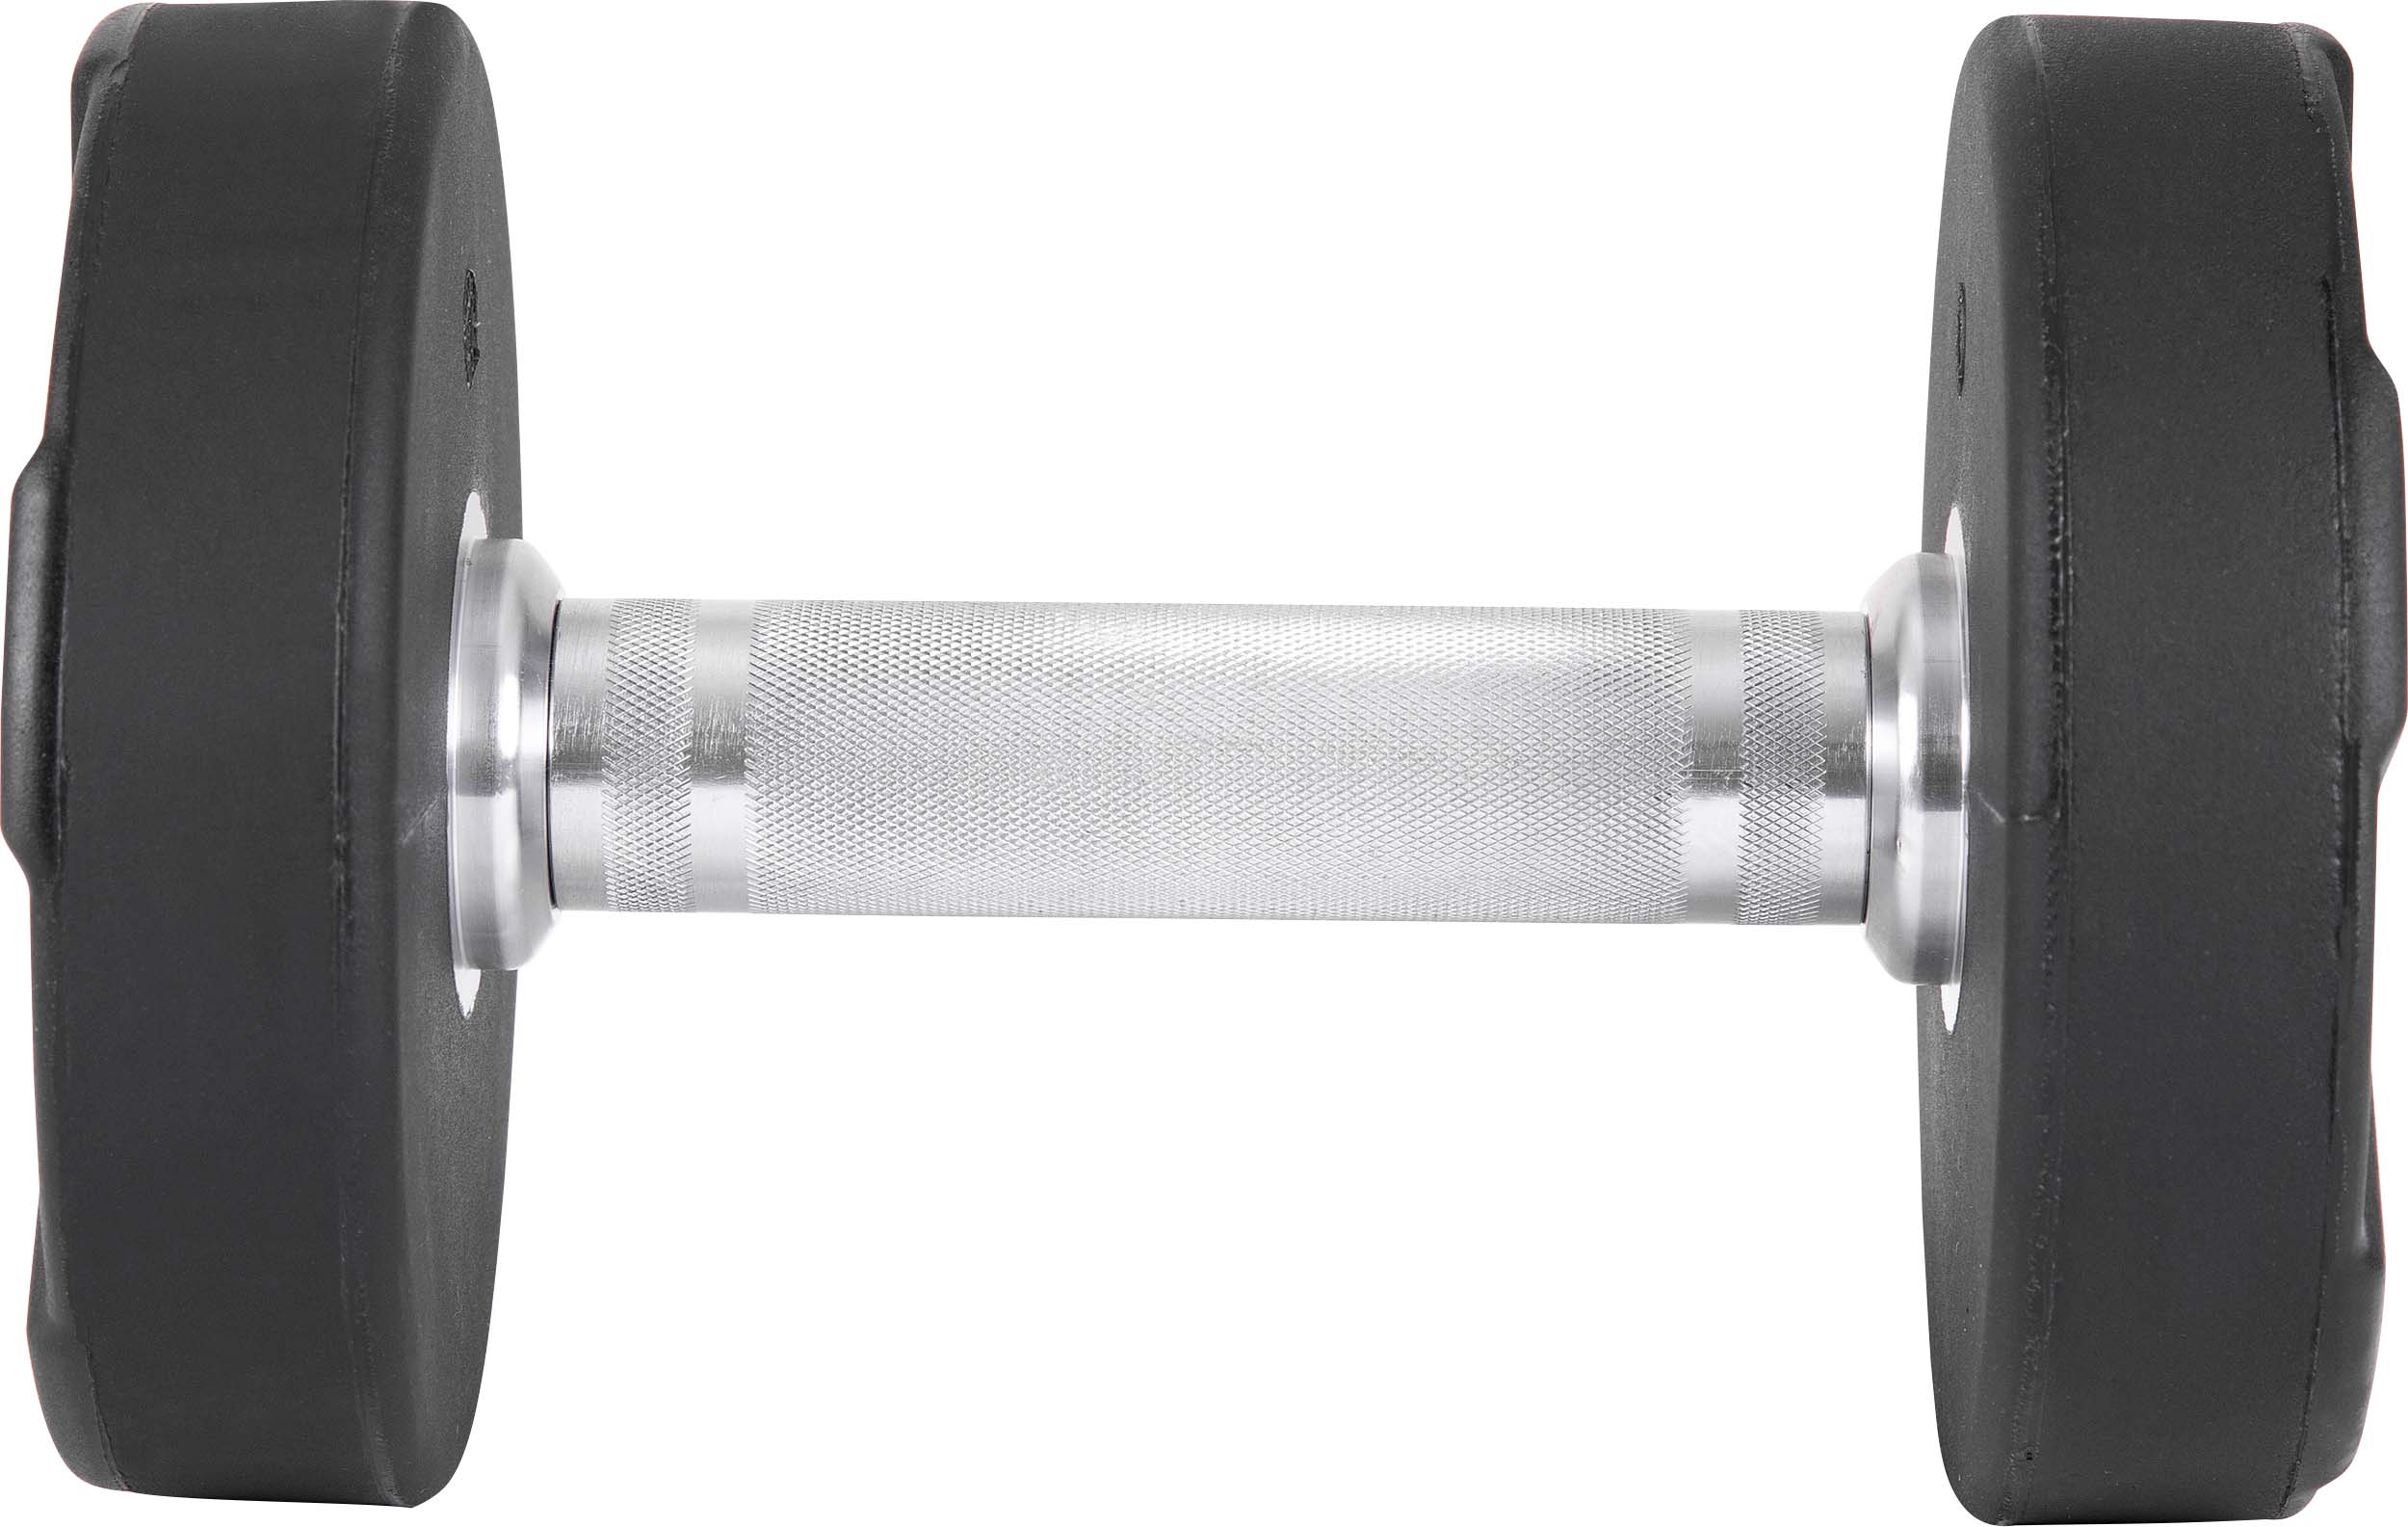 Aλτήρας Στρογγυλός PU Series – 7,50Kg